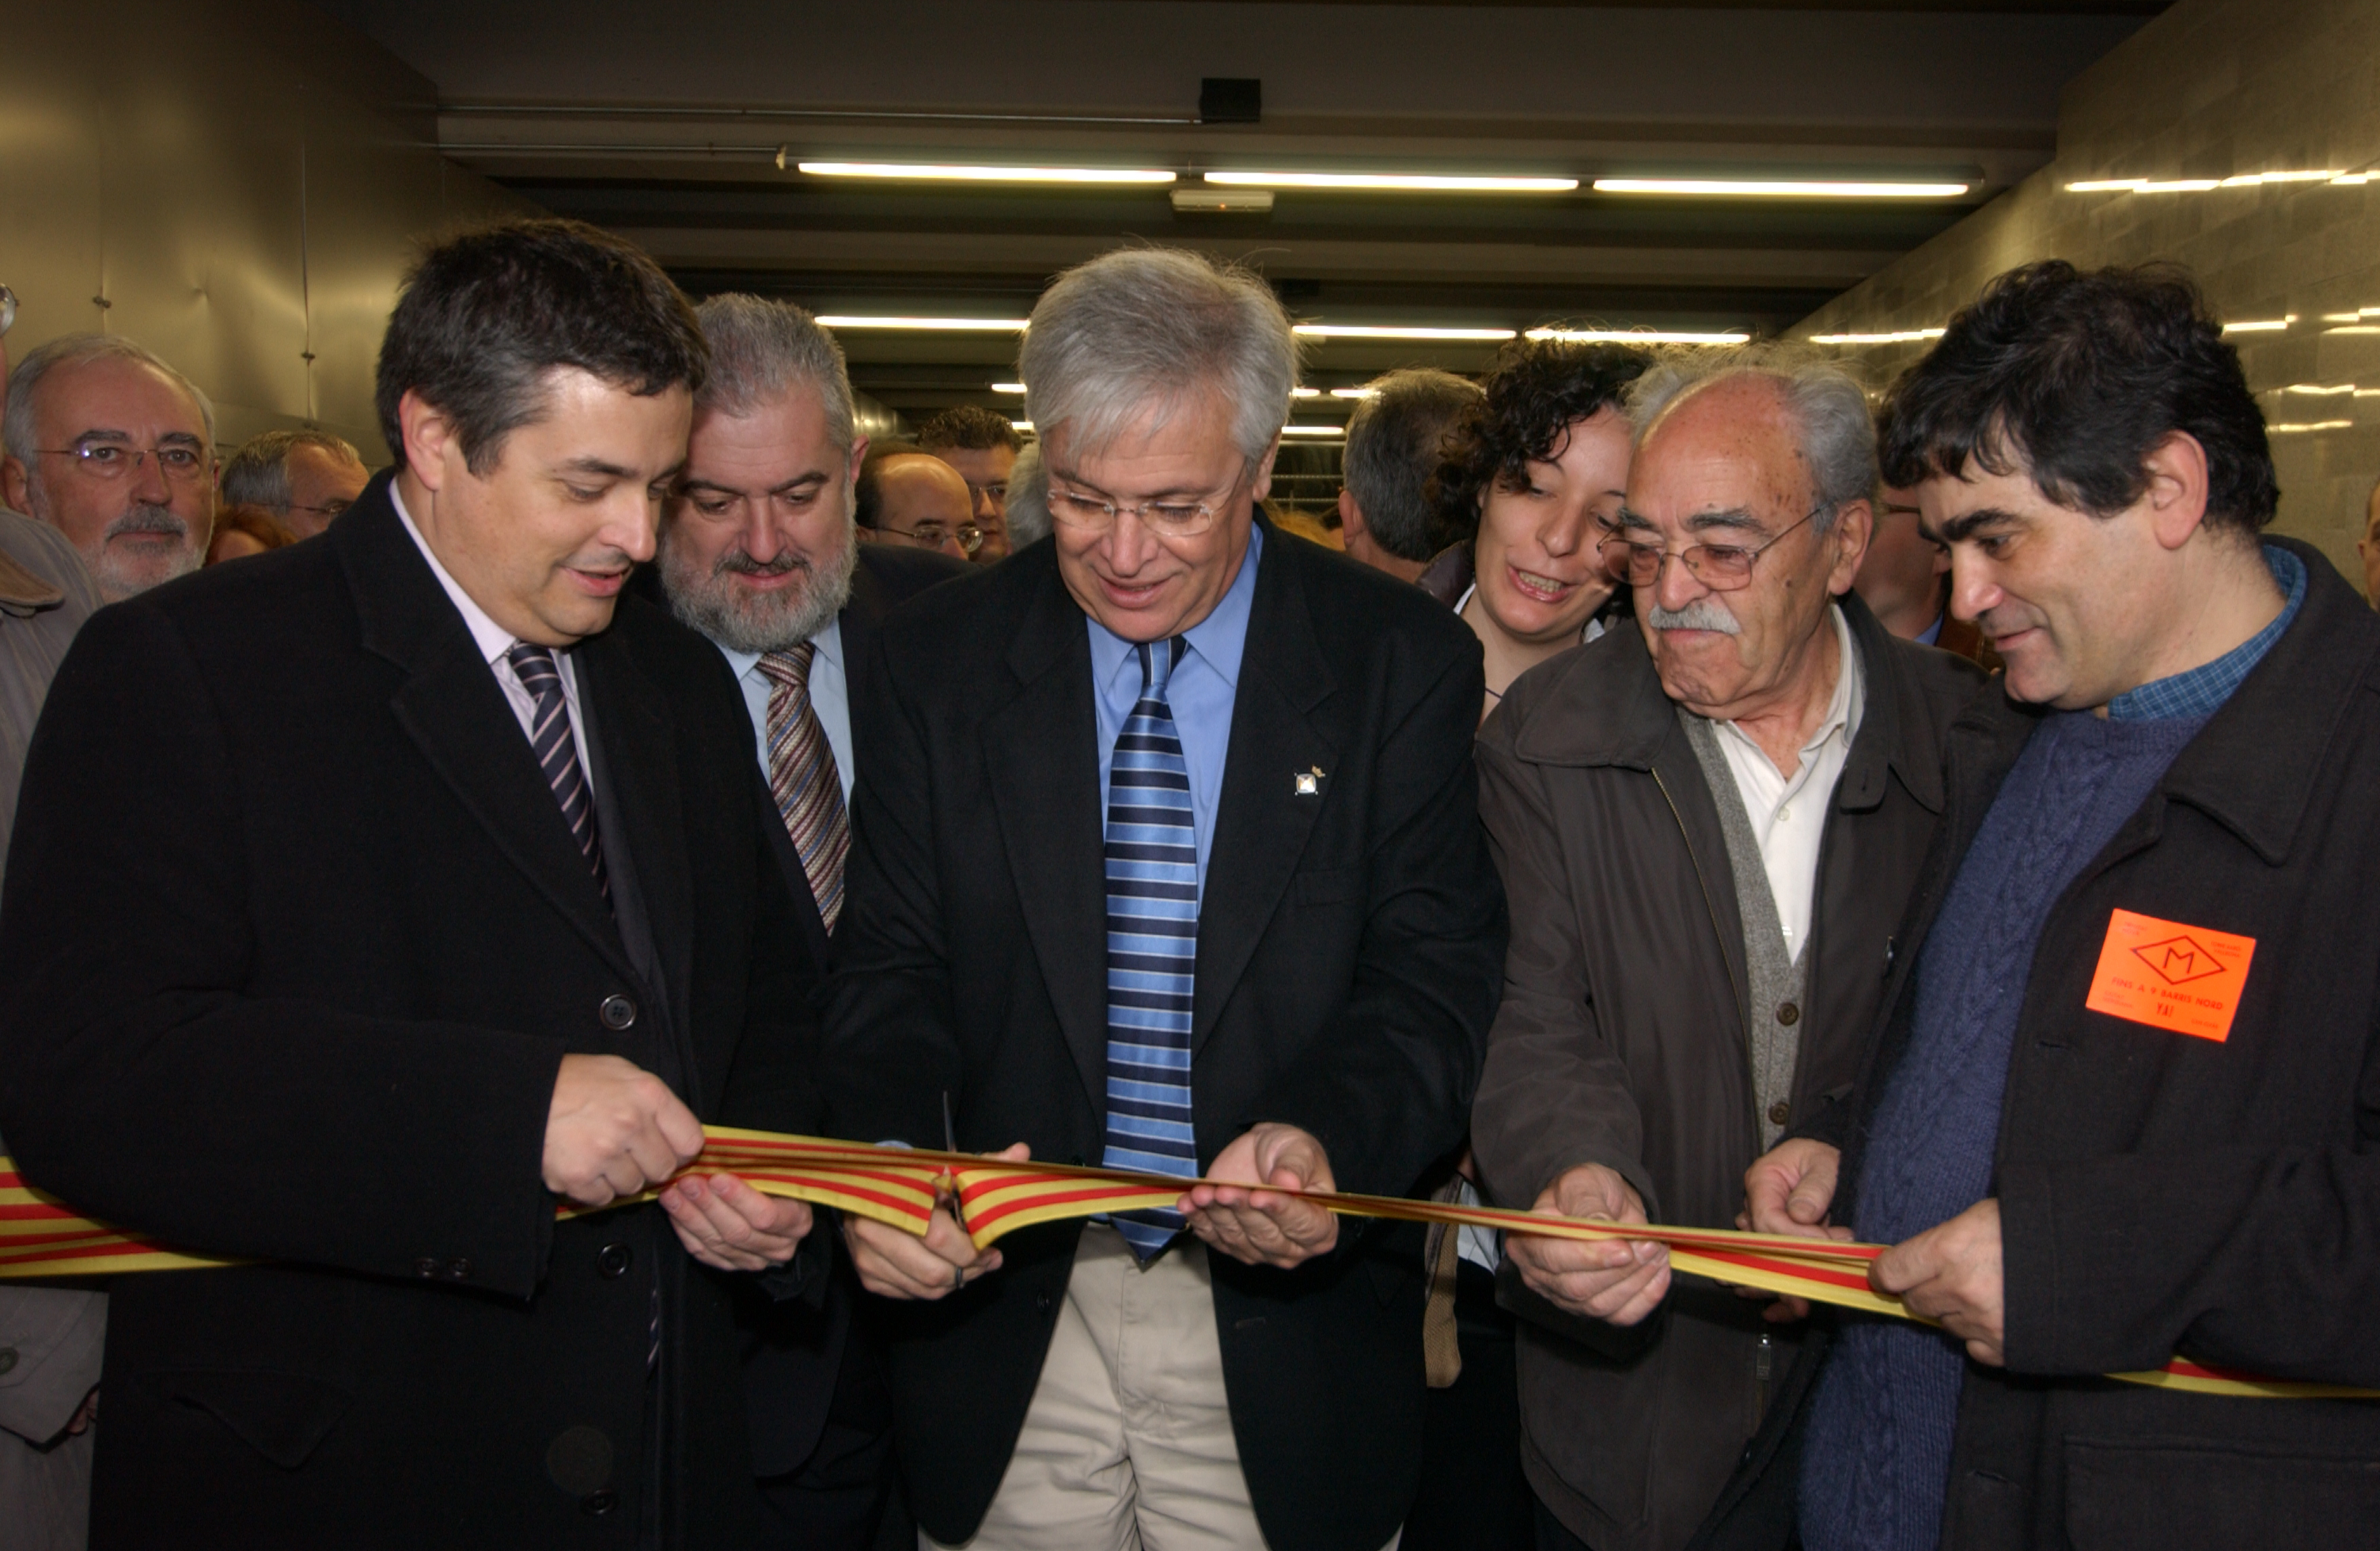 Autoritats i representants veïnals van inaugurar la nova línia 11 / Arxiu TMB